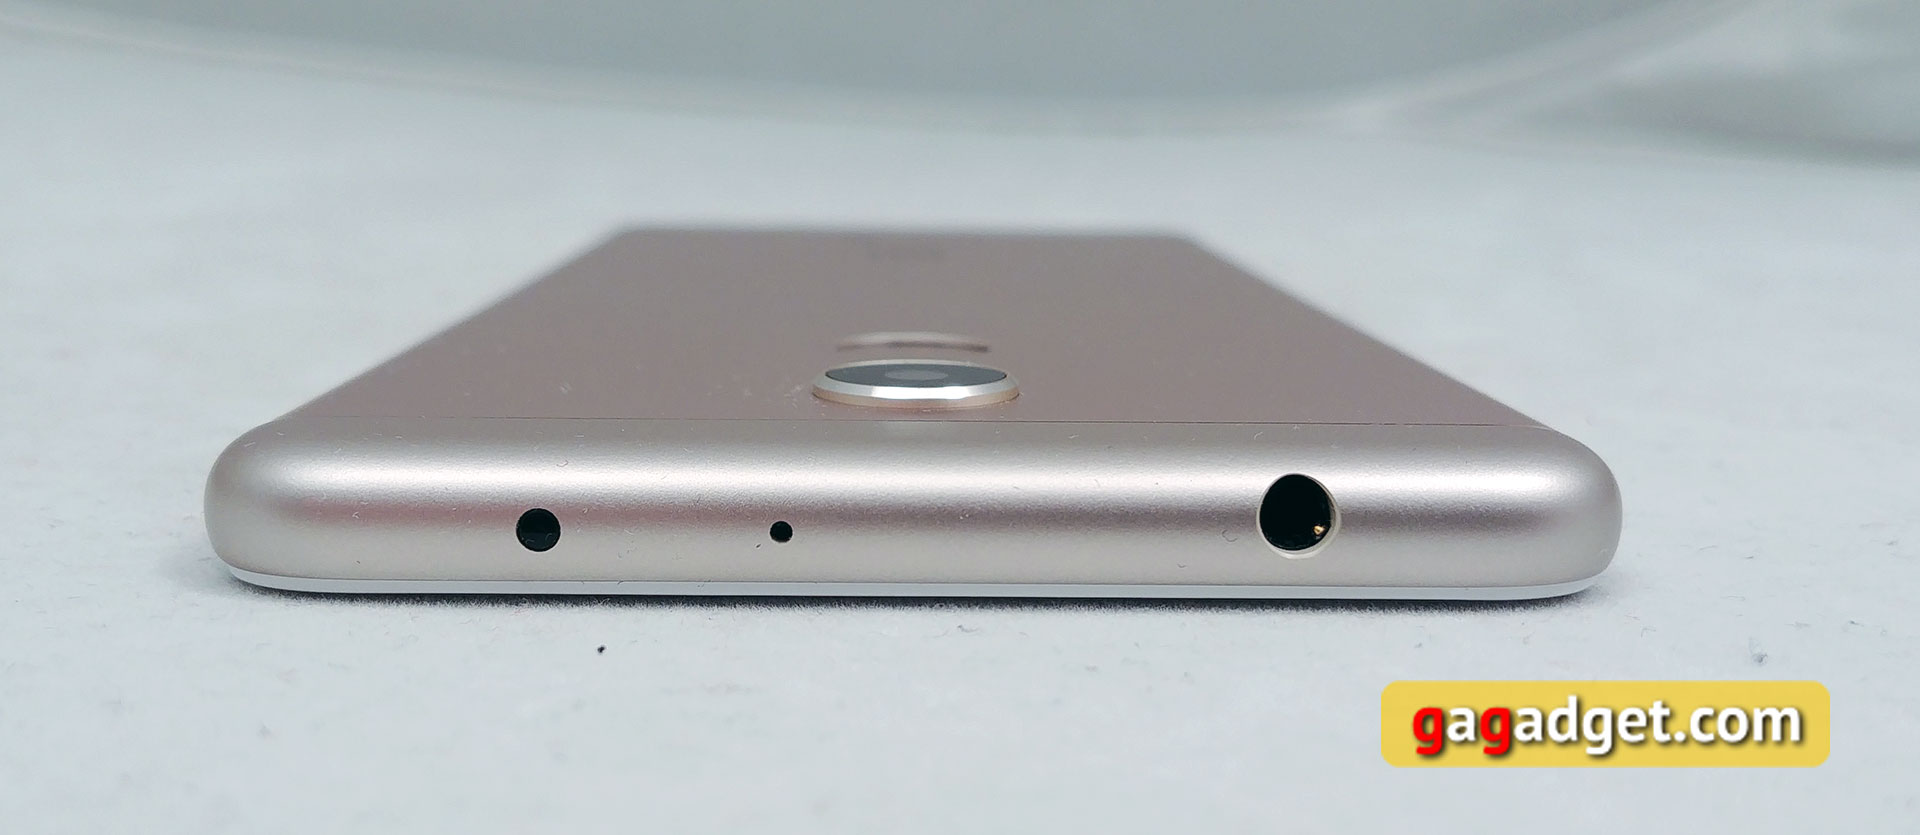 Обзор Xiaomi Redmi 5: хитовый бюджетный смартфон теперь с экраном 18:9-7